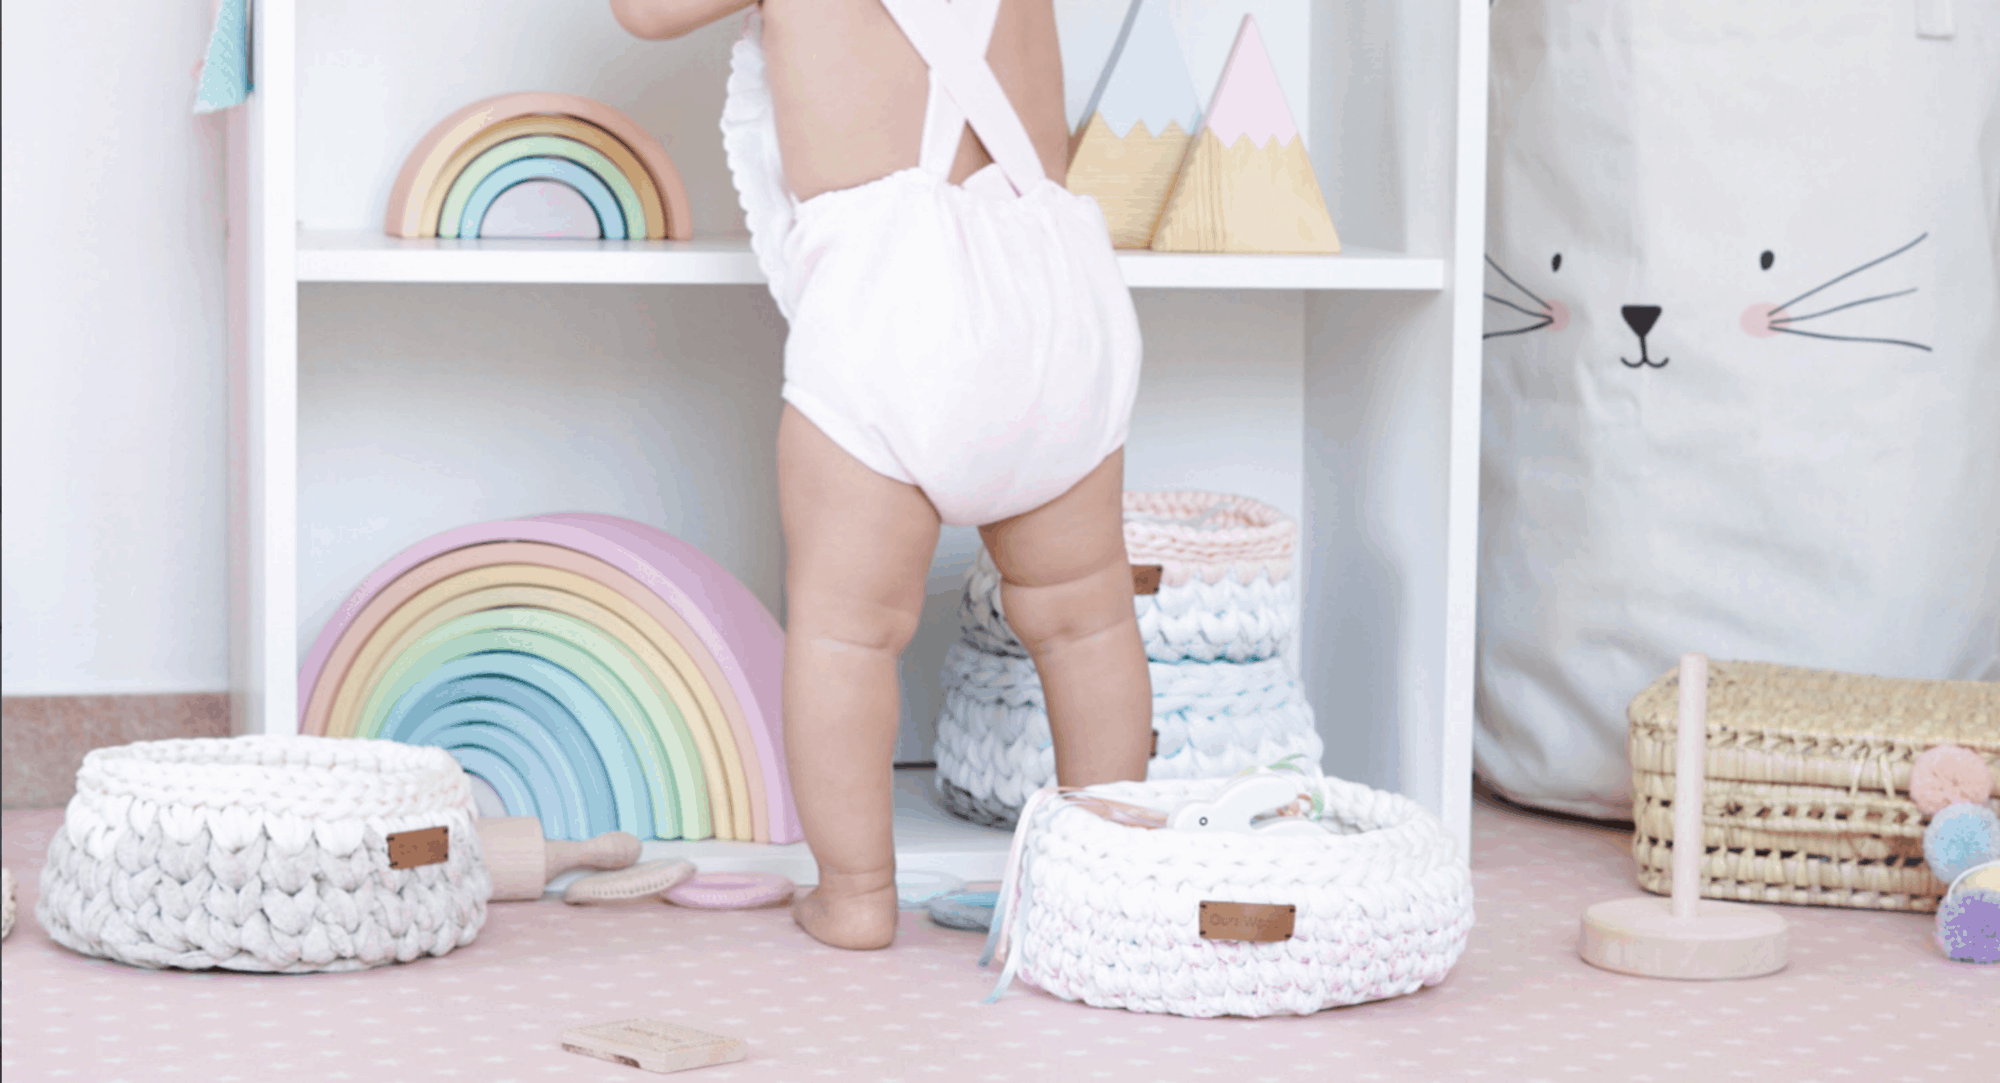 Juguetes para bebés de 0 a 12 meses - Criar con Sentido Común